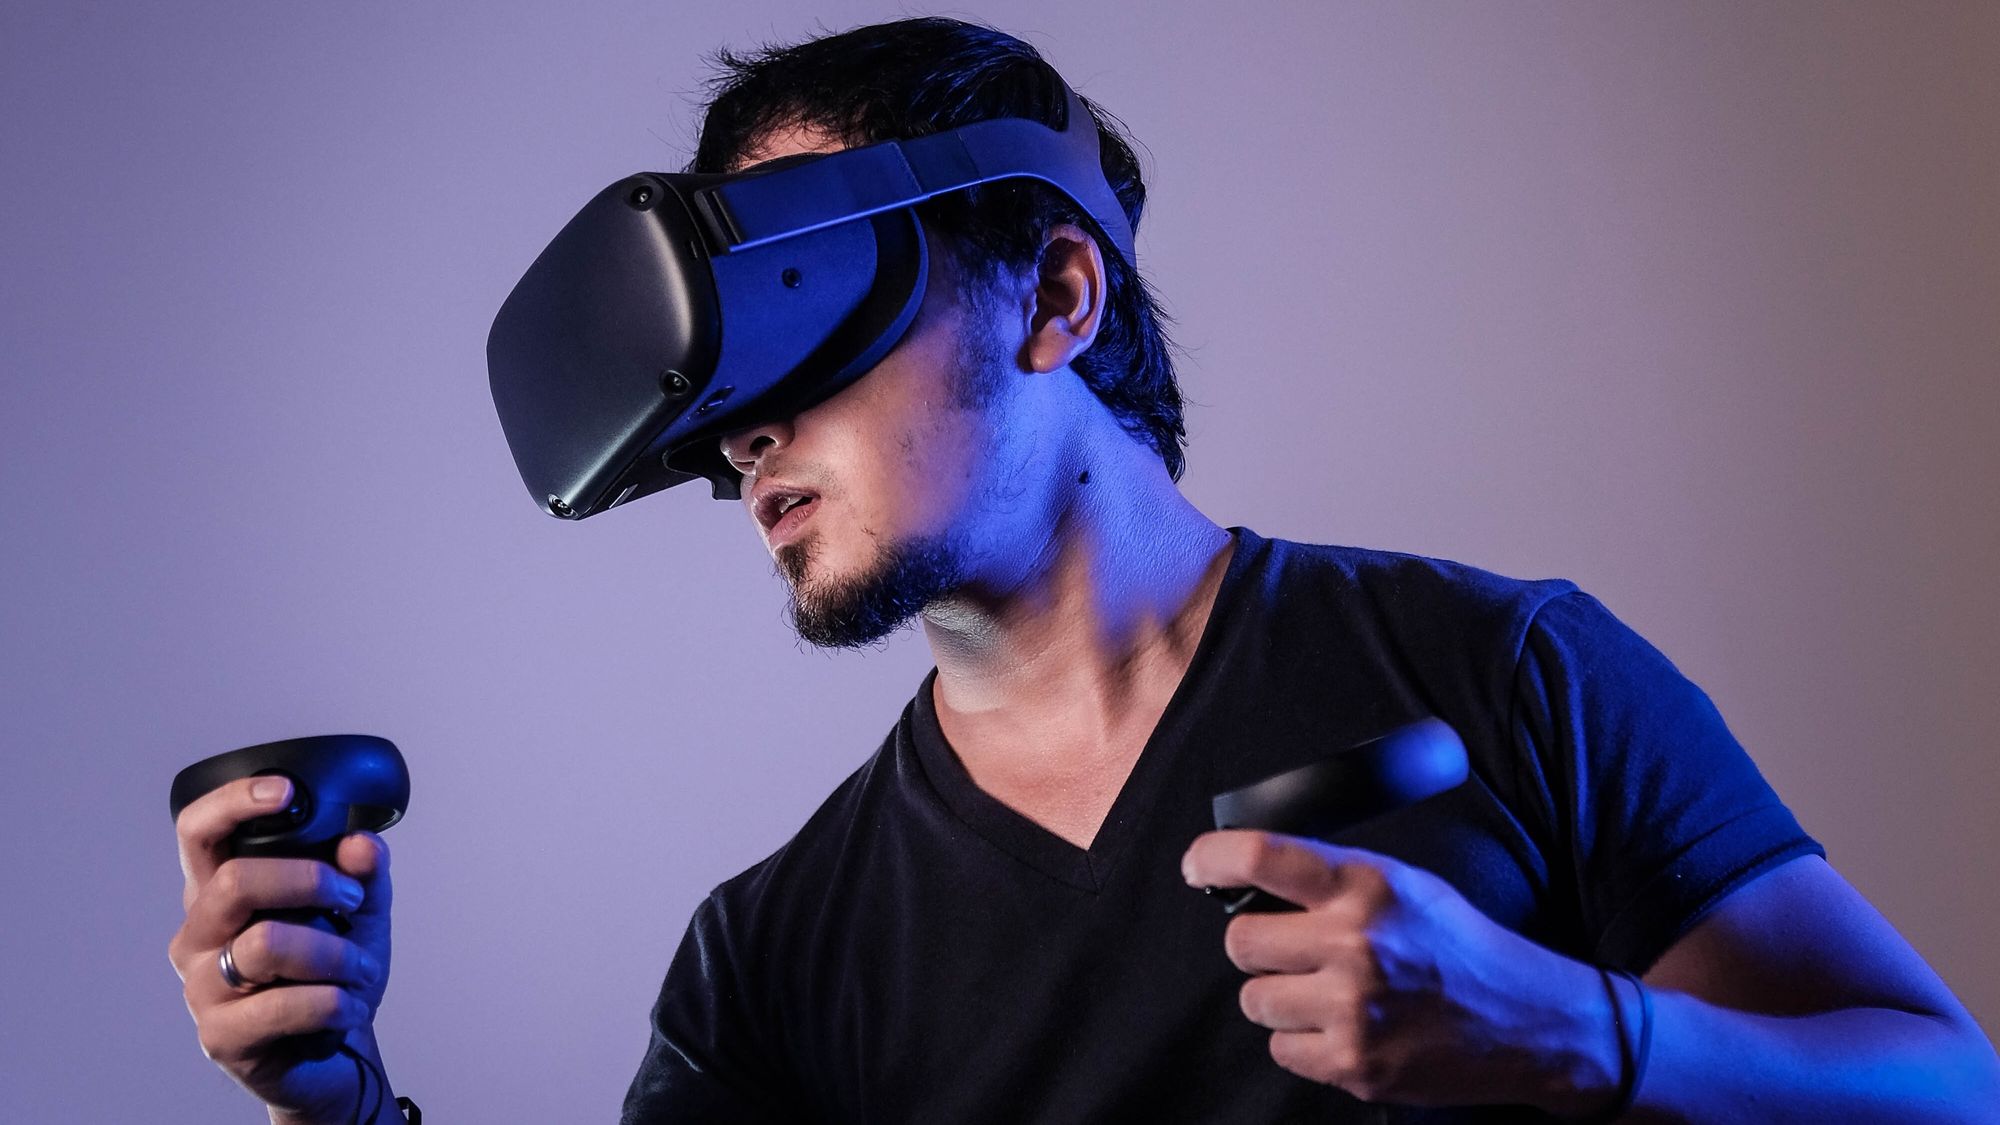 La réalité virtuelle, une technologie révolutionnaire ?